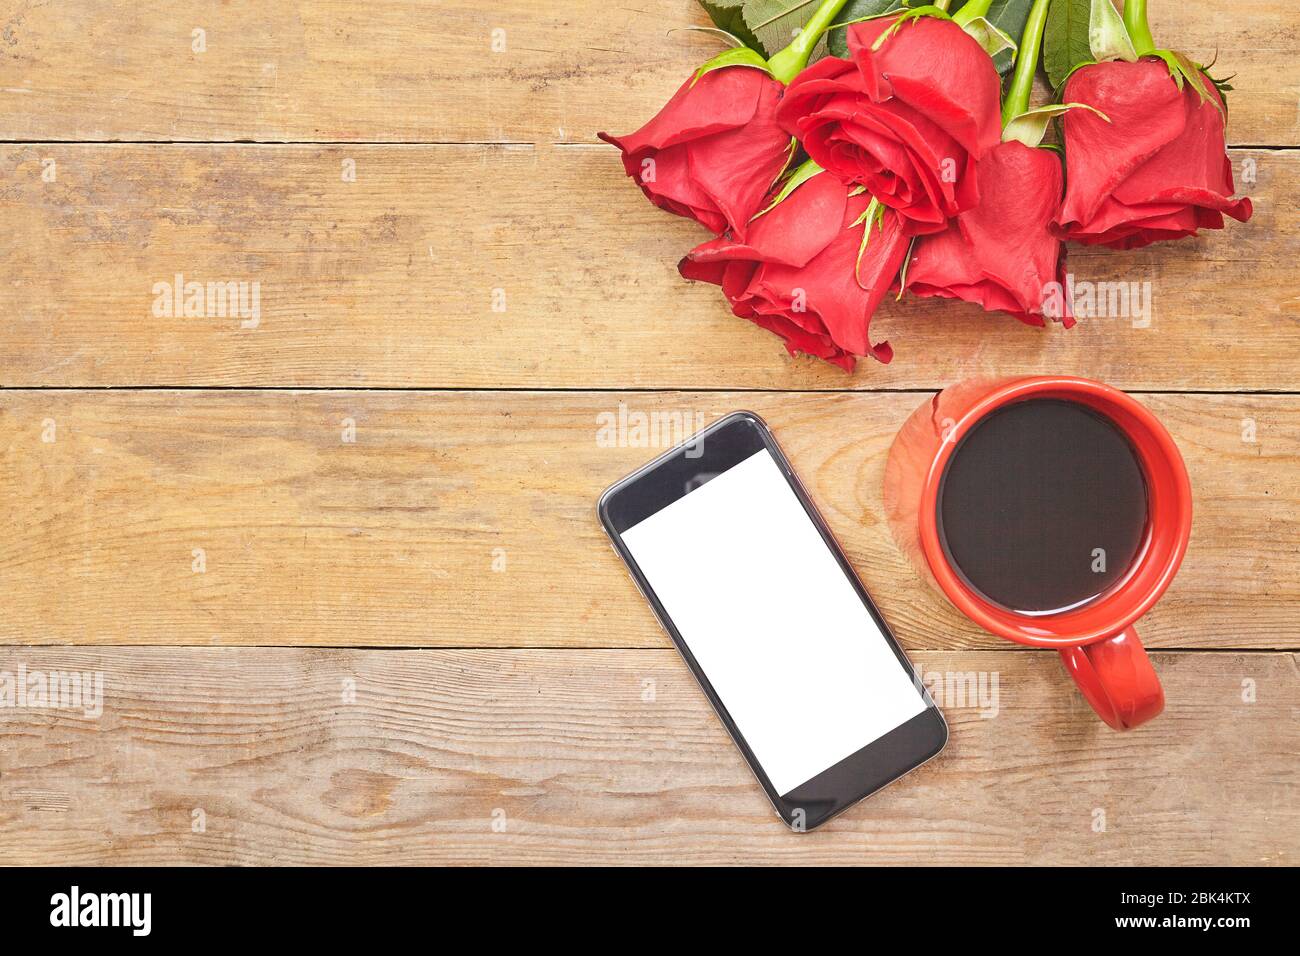 Draufsicht heißer Kaffee Latte mit einer roten Rose und Smartphone auf einem Holztisch. Stockfoto